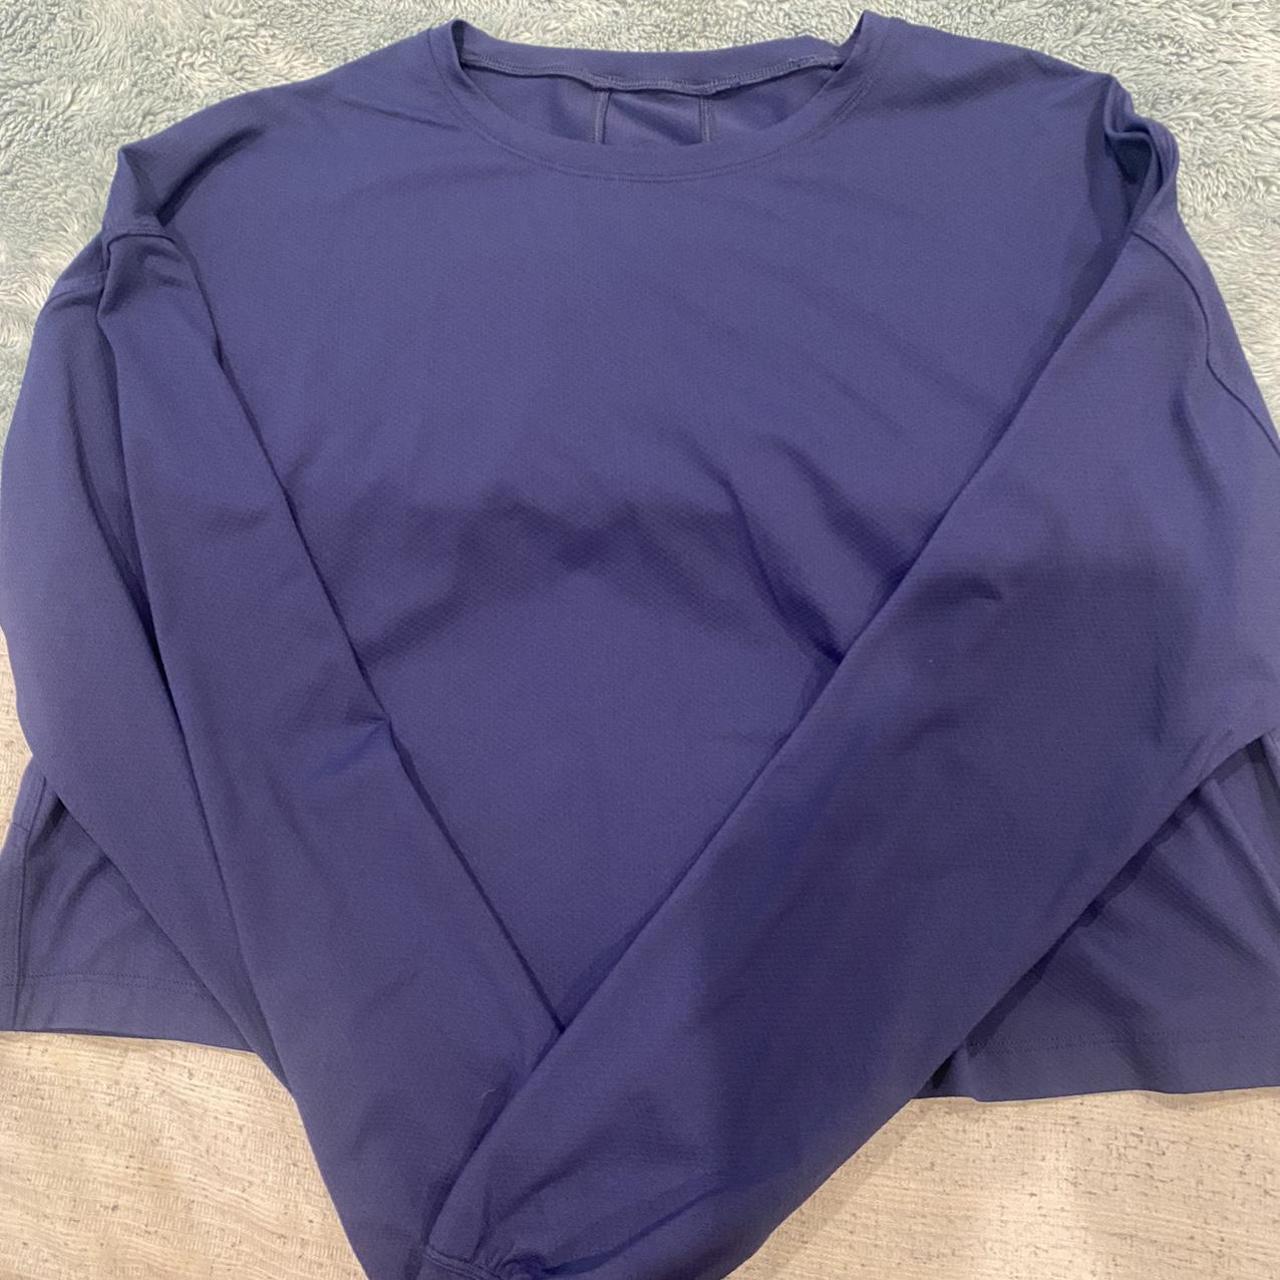 lululemon Abrasion Resistant Training Long Sleeve Shirt